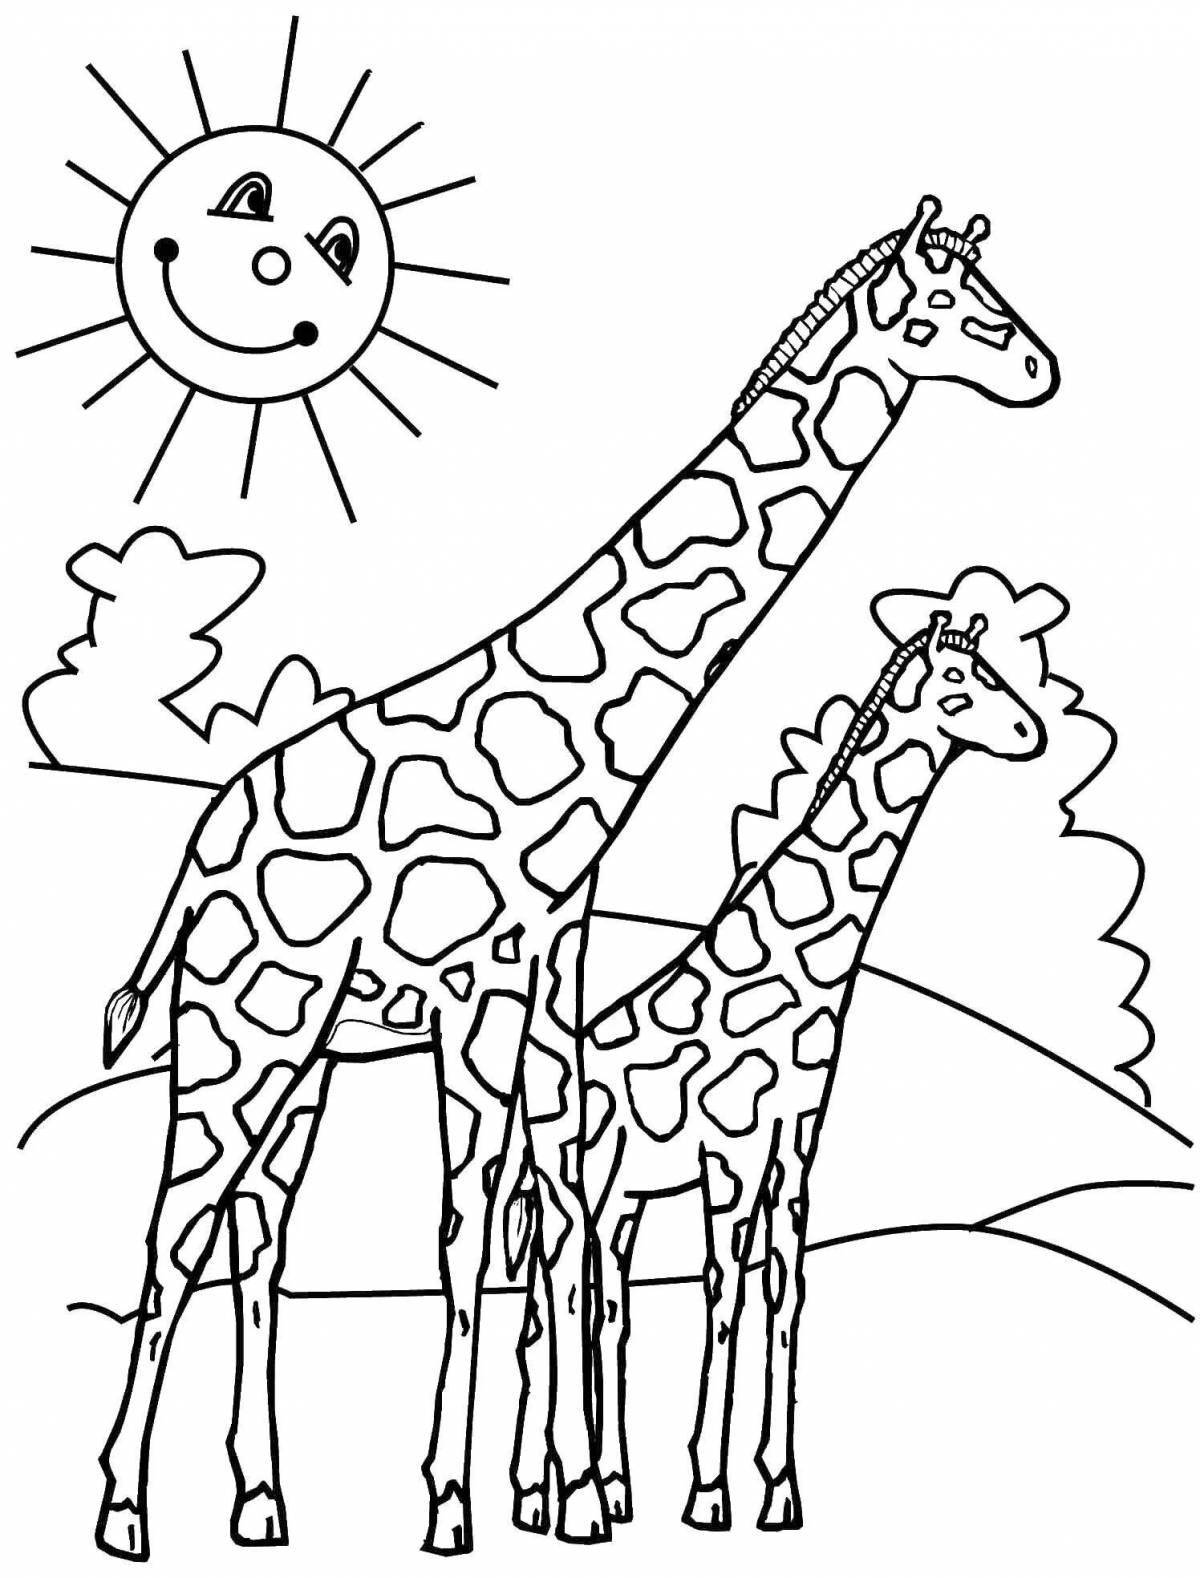 Симпатичная раскраска жирафа